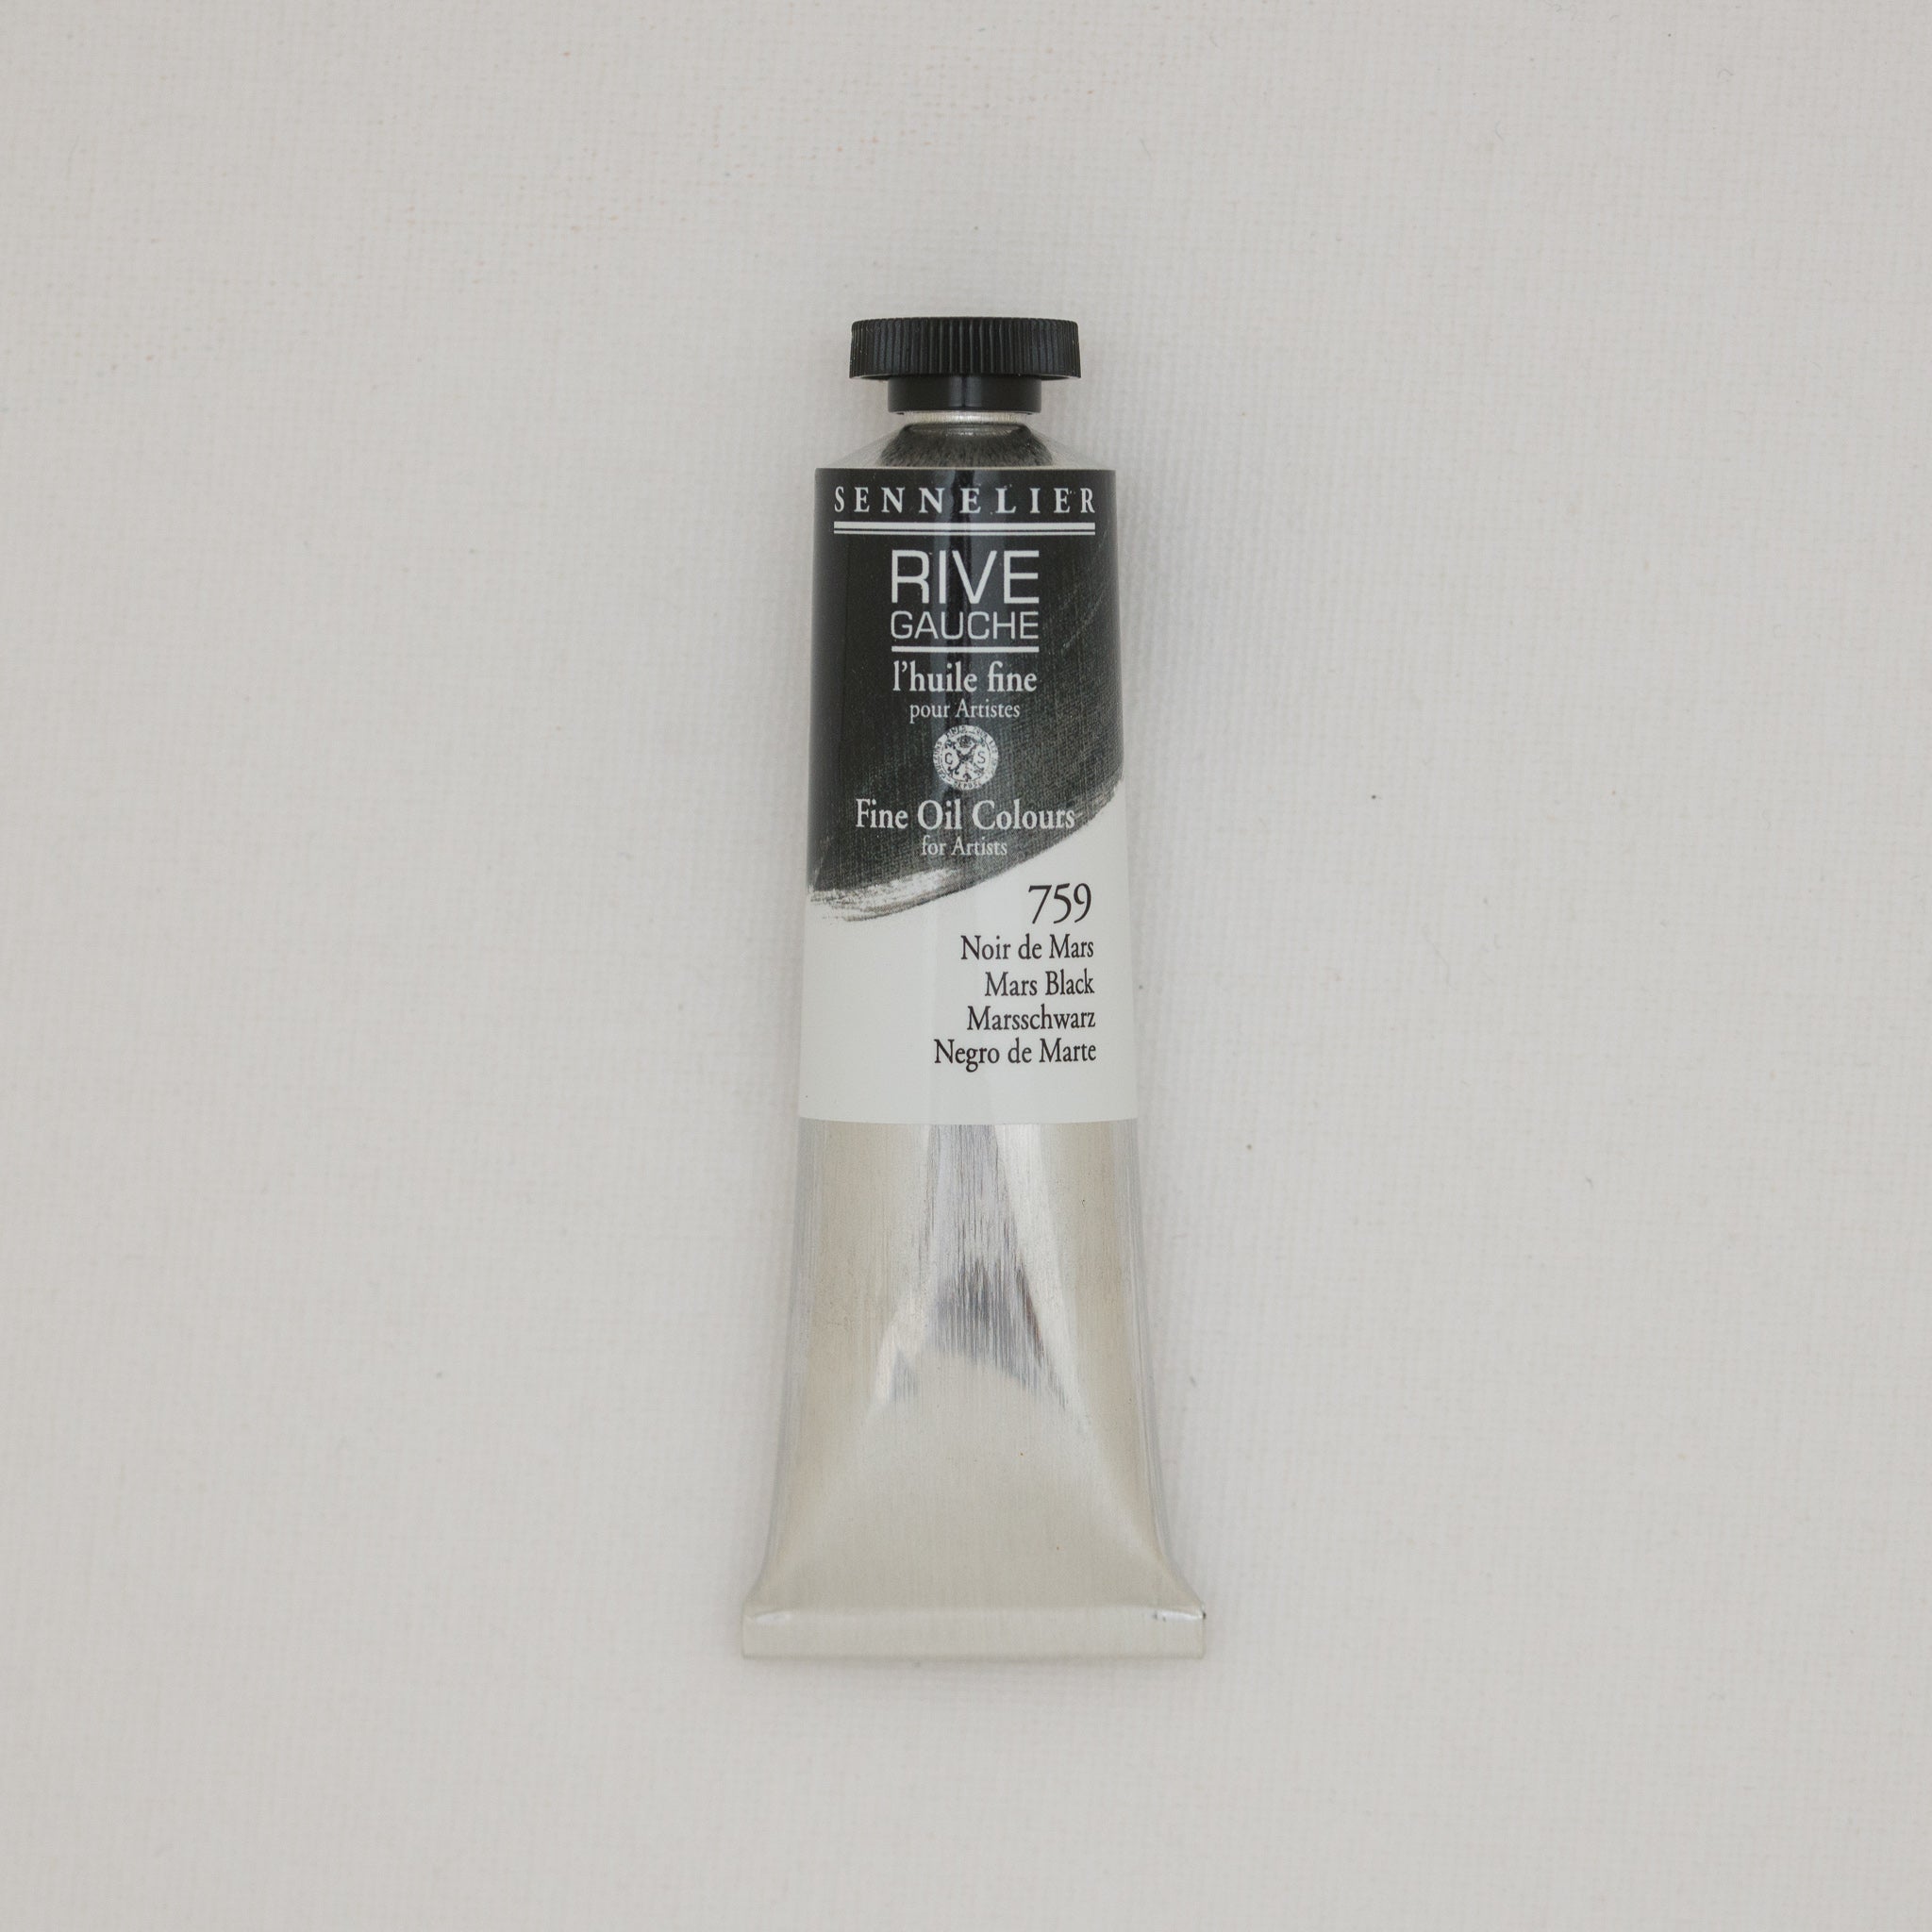 Sennelier Rive Gauche Oil Paints - Melbourne Etching Supplies